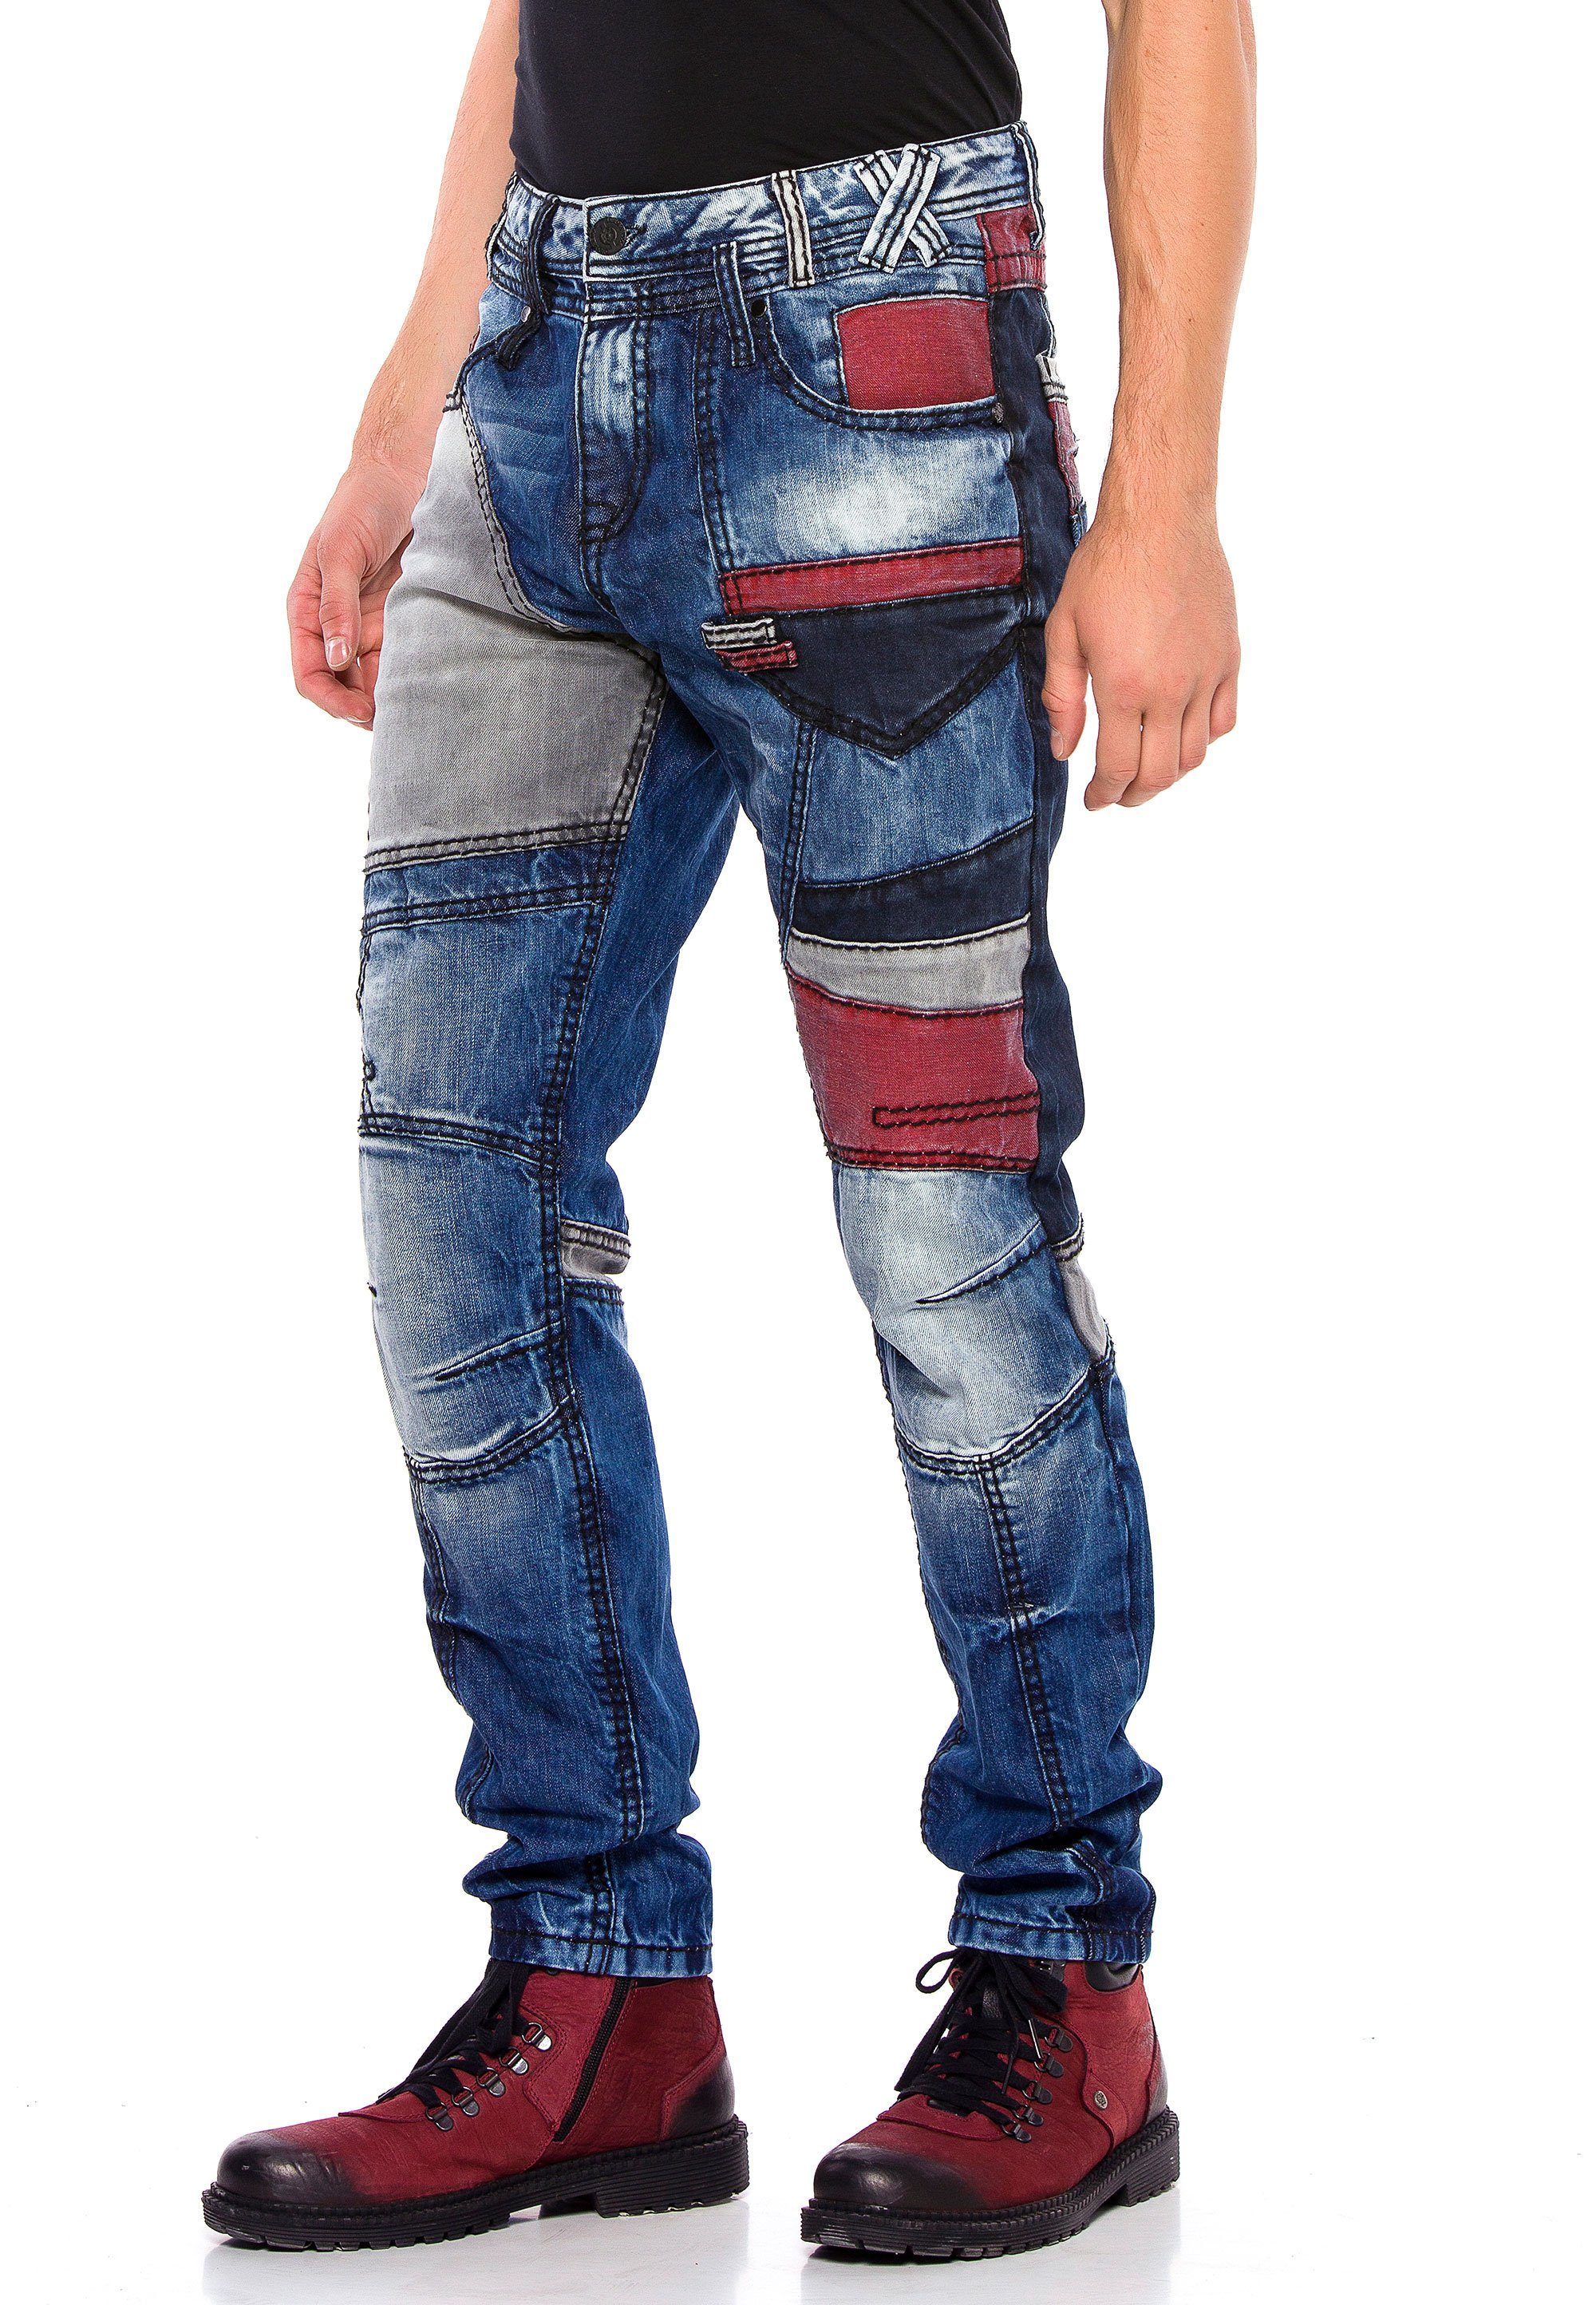 Design & extravaganten Jeans Bequeme Baxx Cipo im